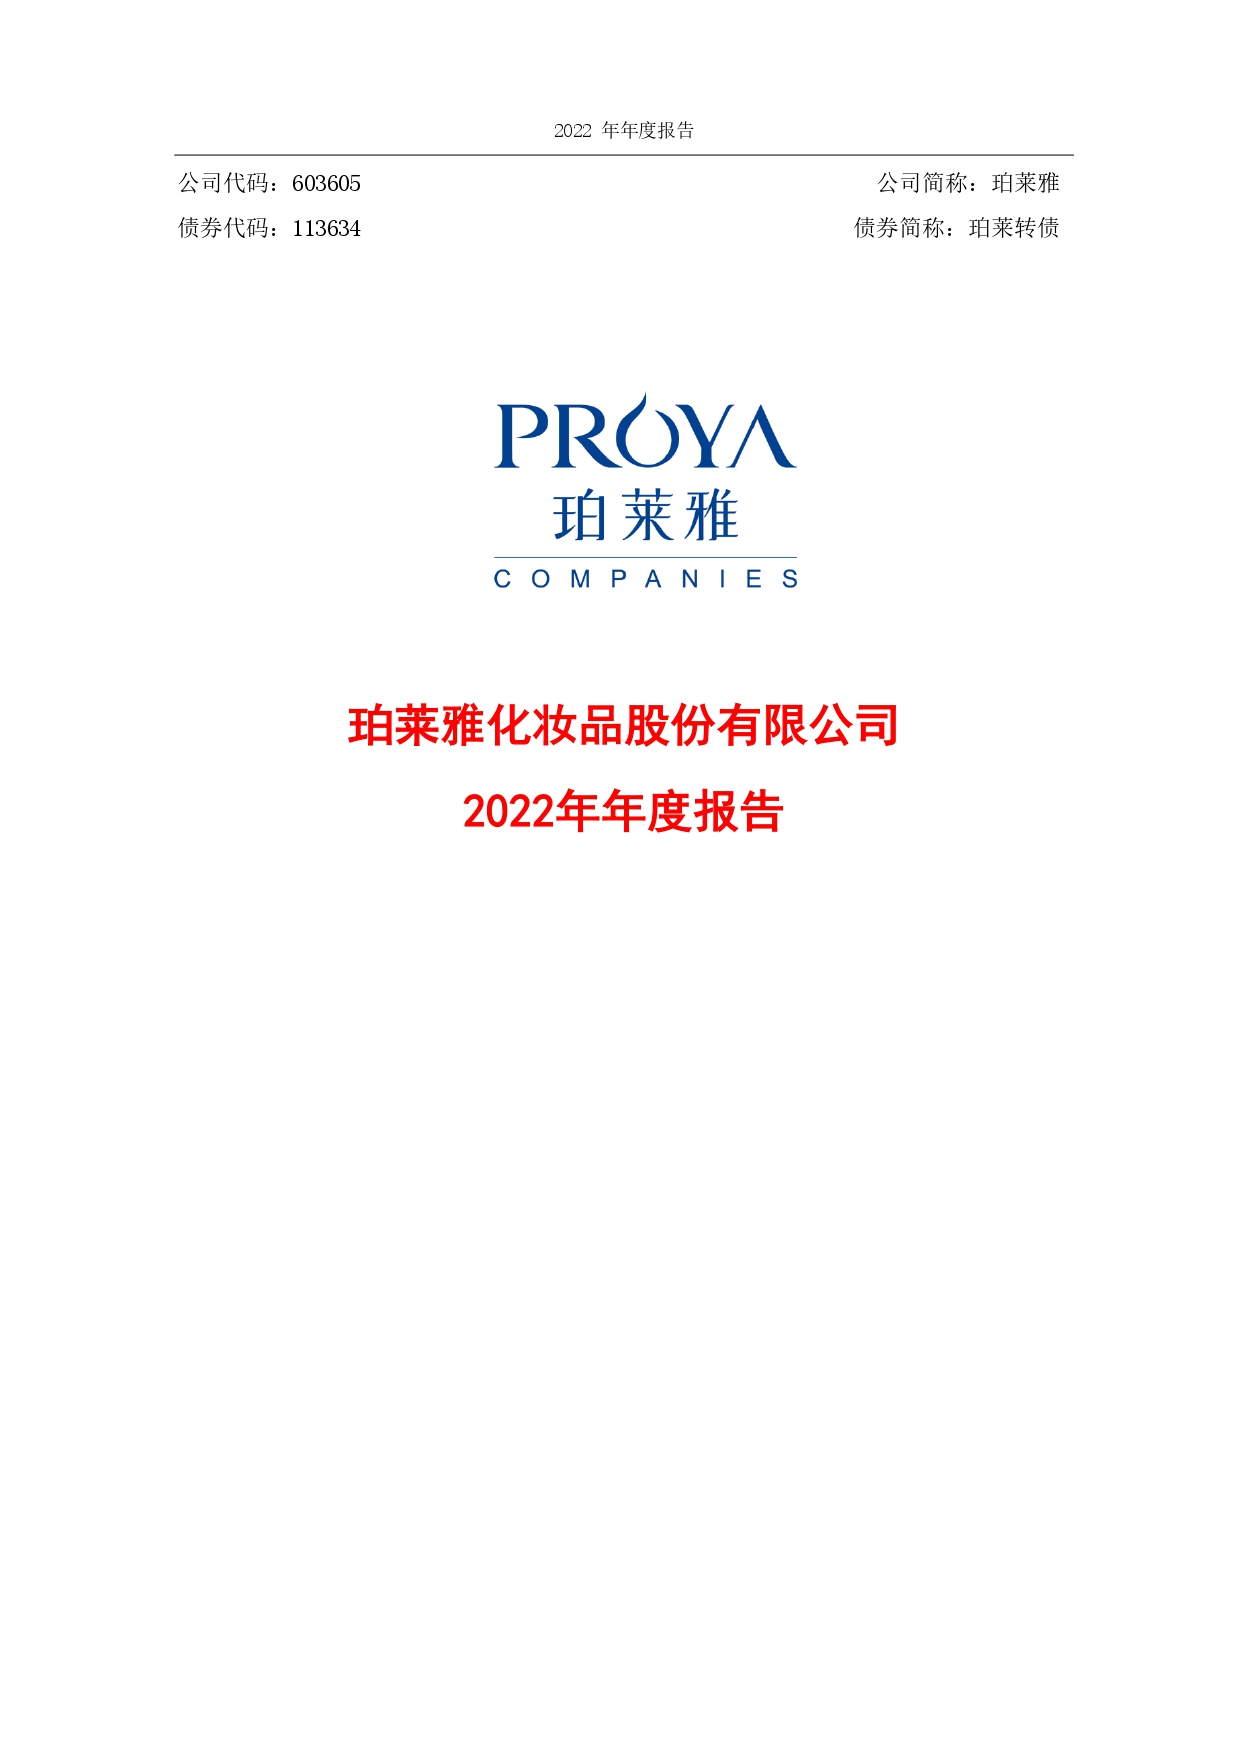 2022年年度财务报告封面_page-0001.jpg